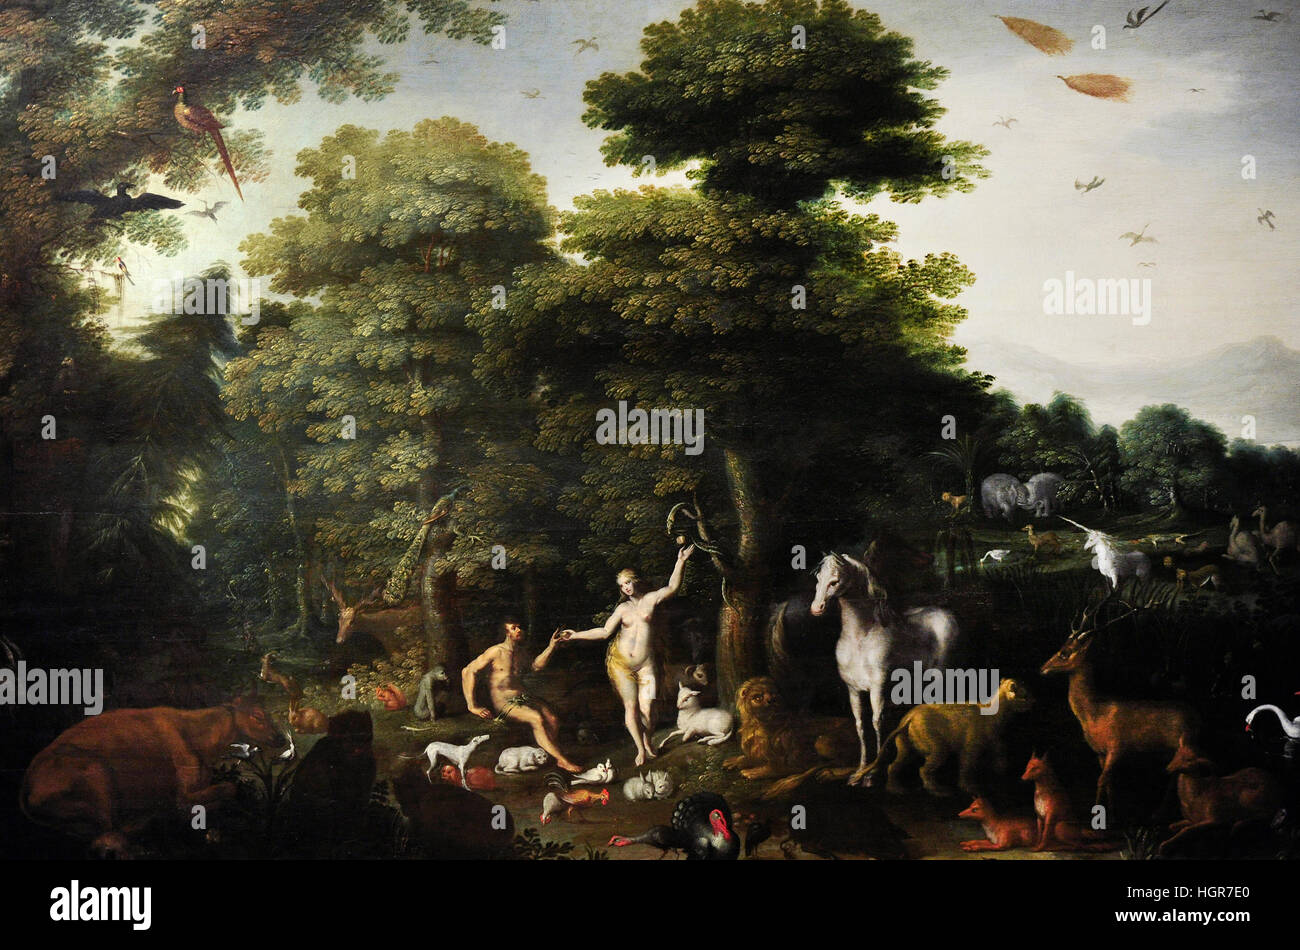 Adriaen van Stalbemt (1580-1662). Peintre flamand. Le paradis. La Flandre, ca 1615. Huile sur bois. Musée national. Gdansk. La Pologne. Banque D'Images